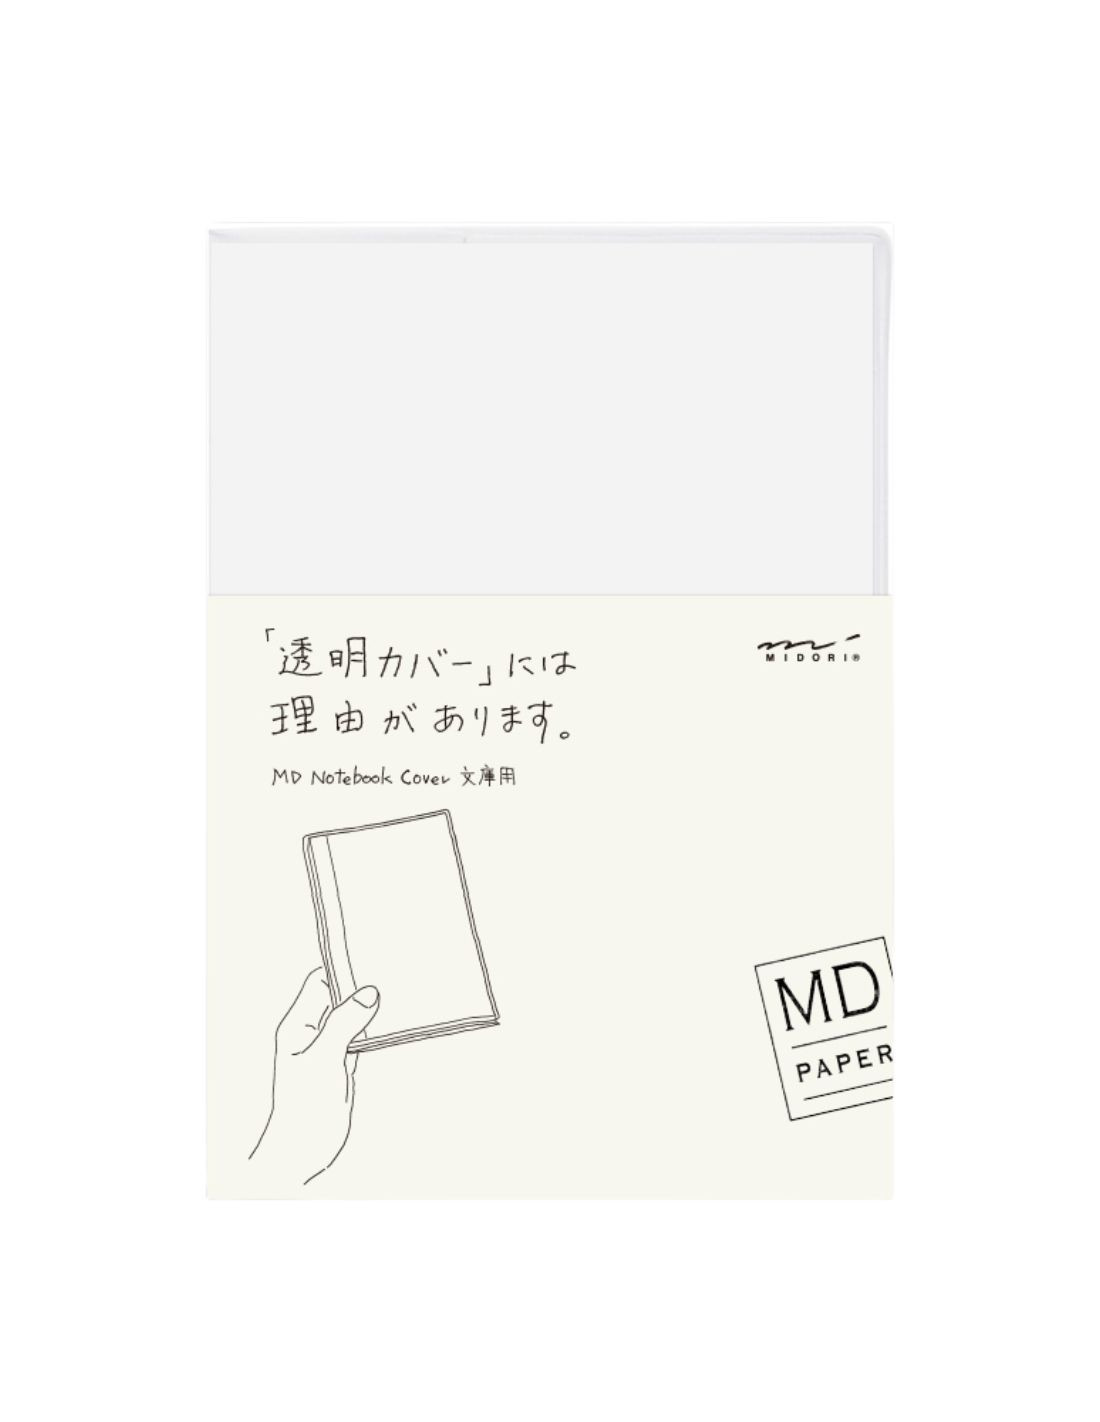 Couverture pour carnet MD Paper - A6 - PVC - Midori